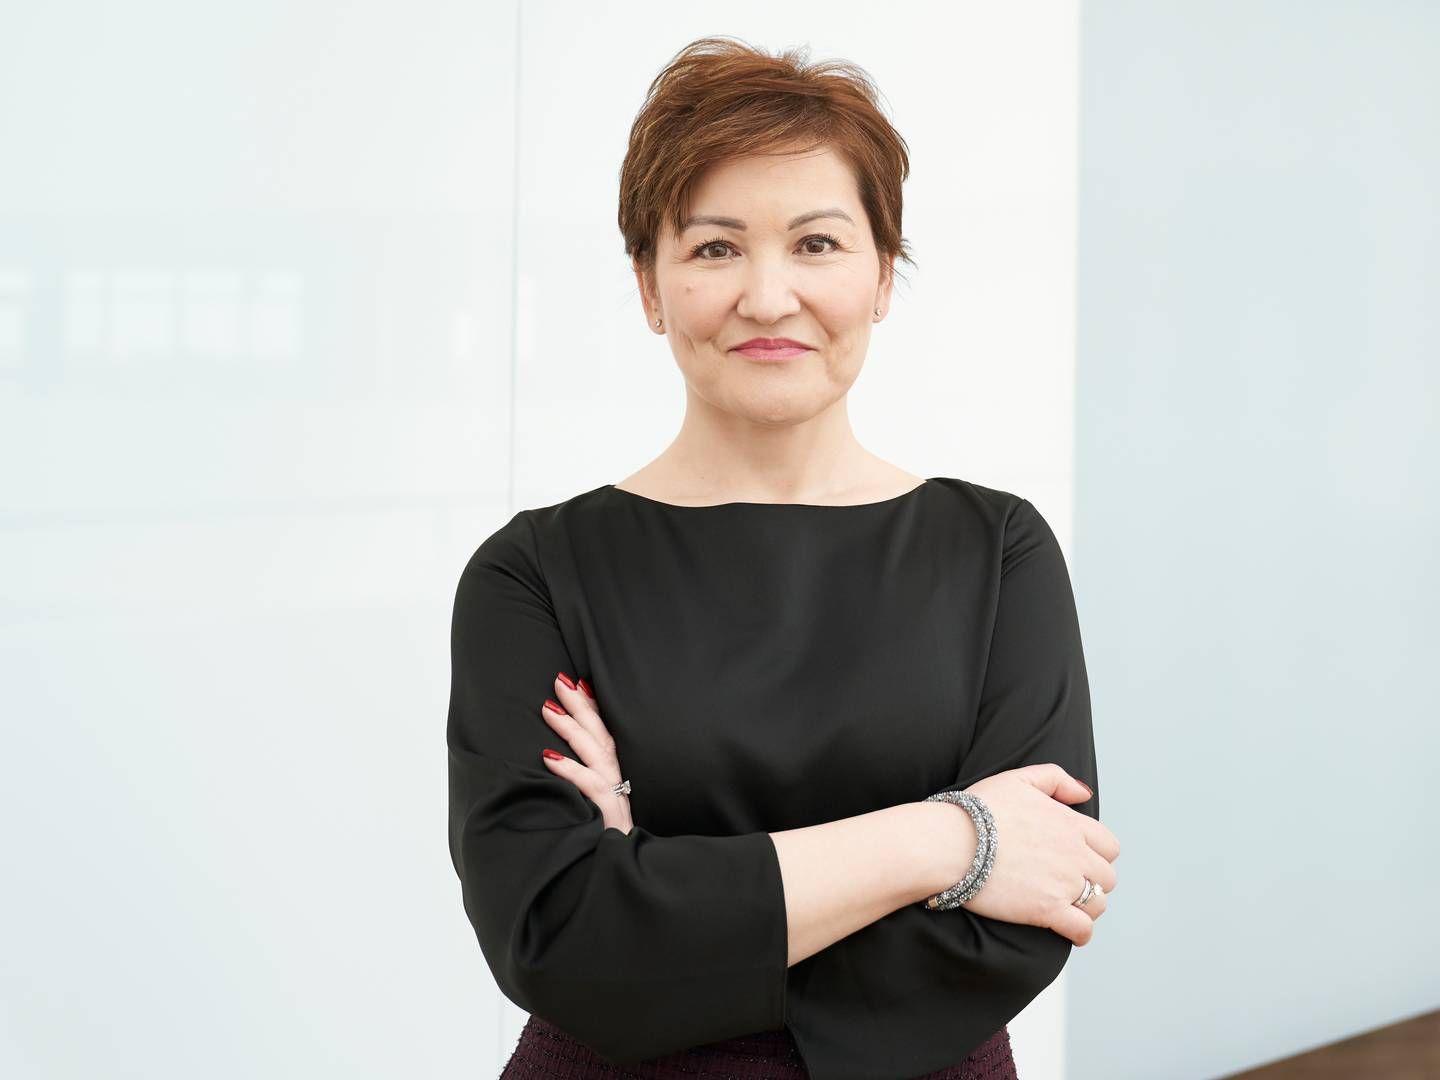 Monique Carter, afgående koncerndirektør for HR i Novo Nordisk, forlader selskabet for at forfølge ”en ekstern mulighed”. | Foto: Novo Nordisk /PR